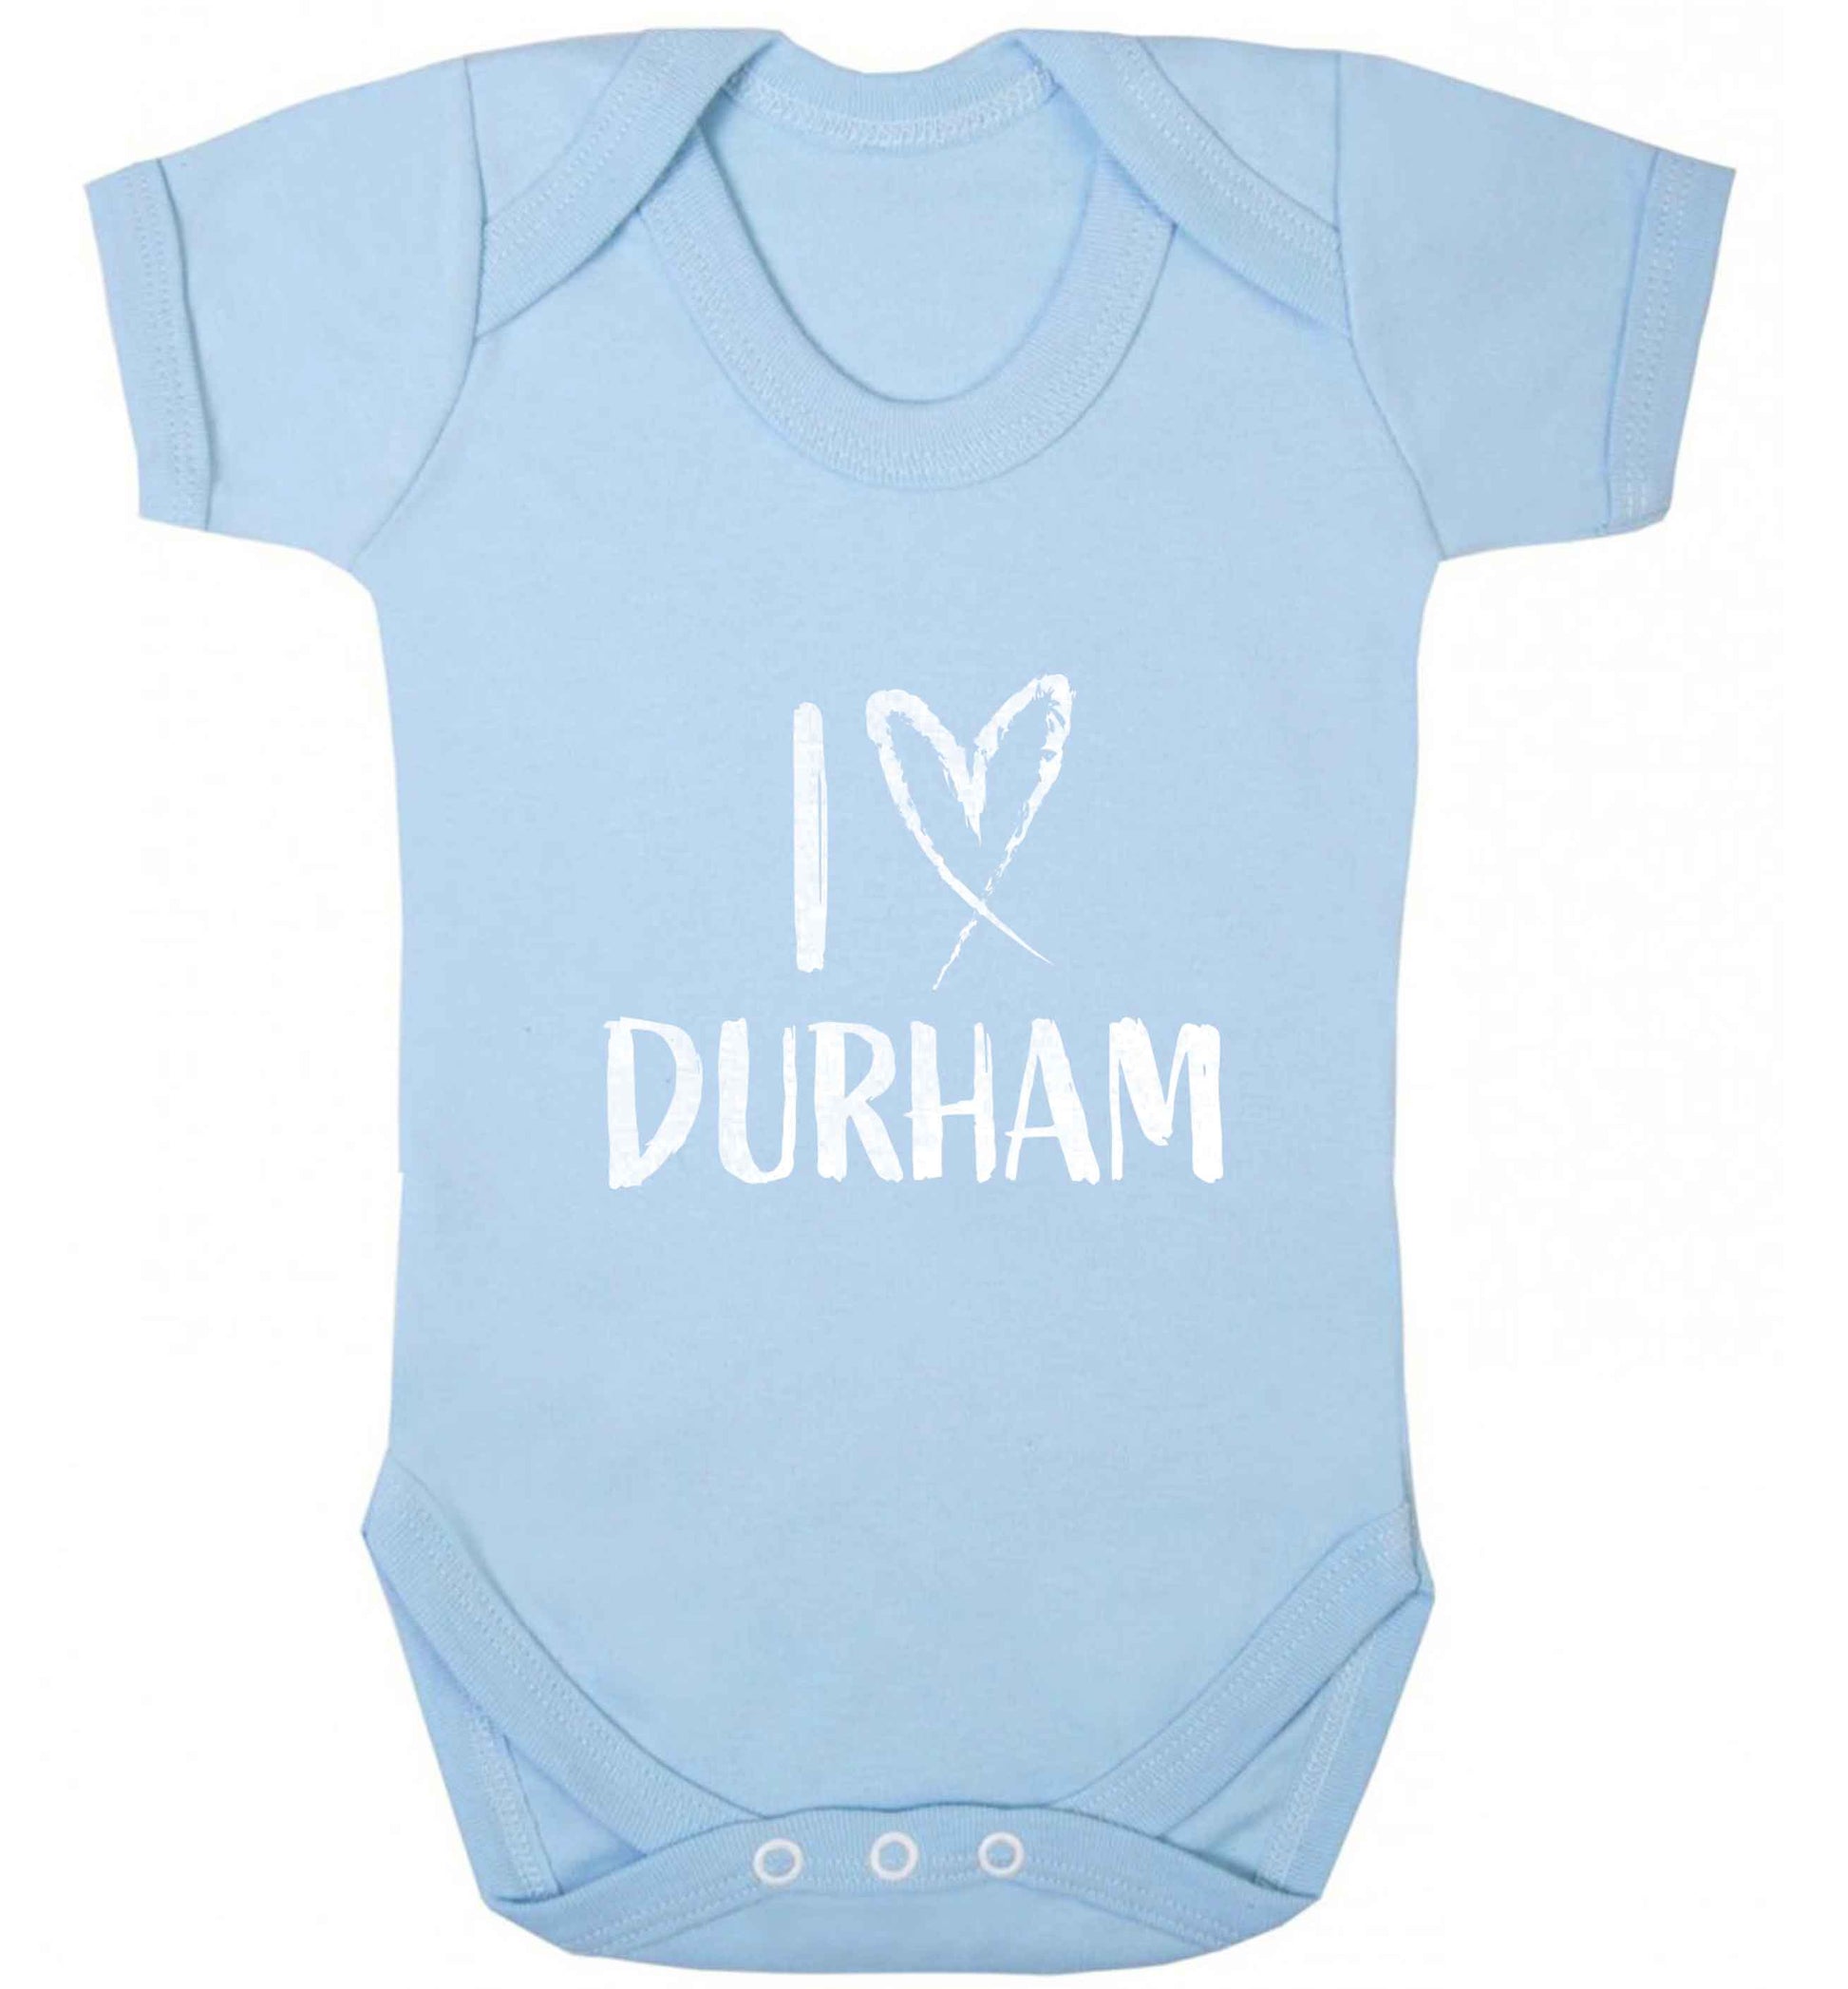 I love Durham baby vest pale blue 18-24 months